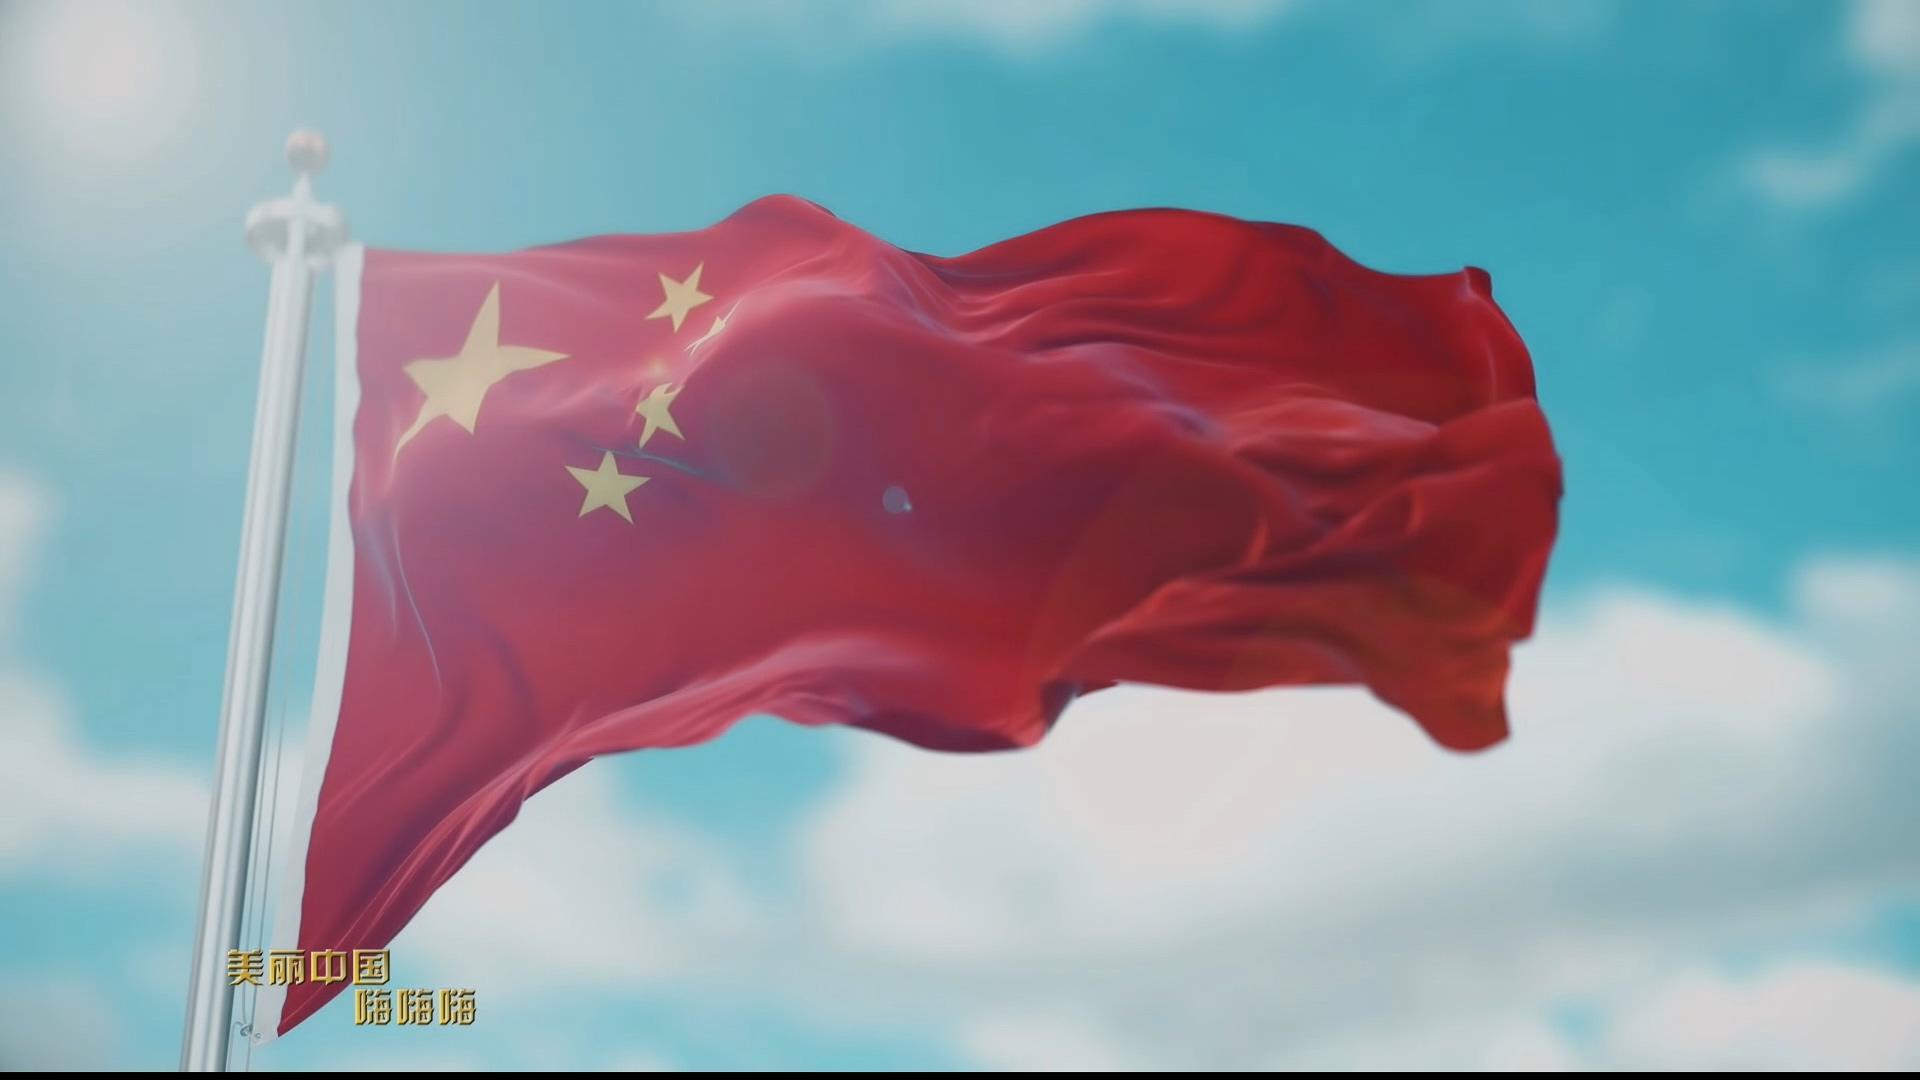 《点赞新时代》第七批“中国梦”主题新创作歌曲